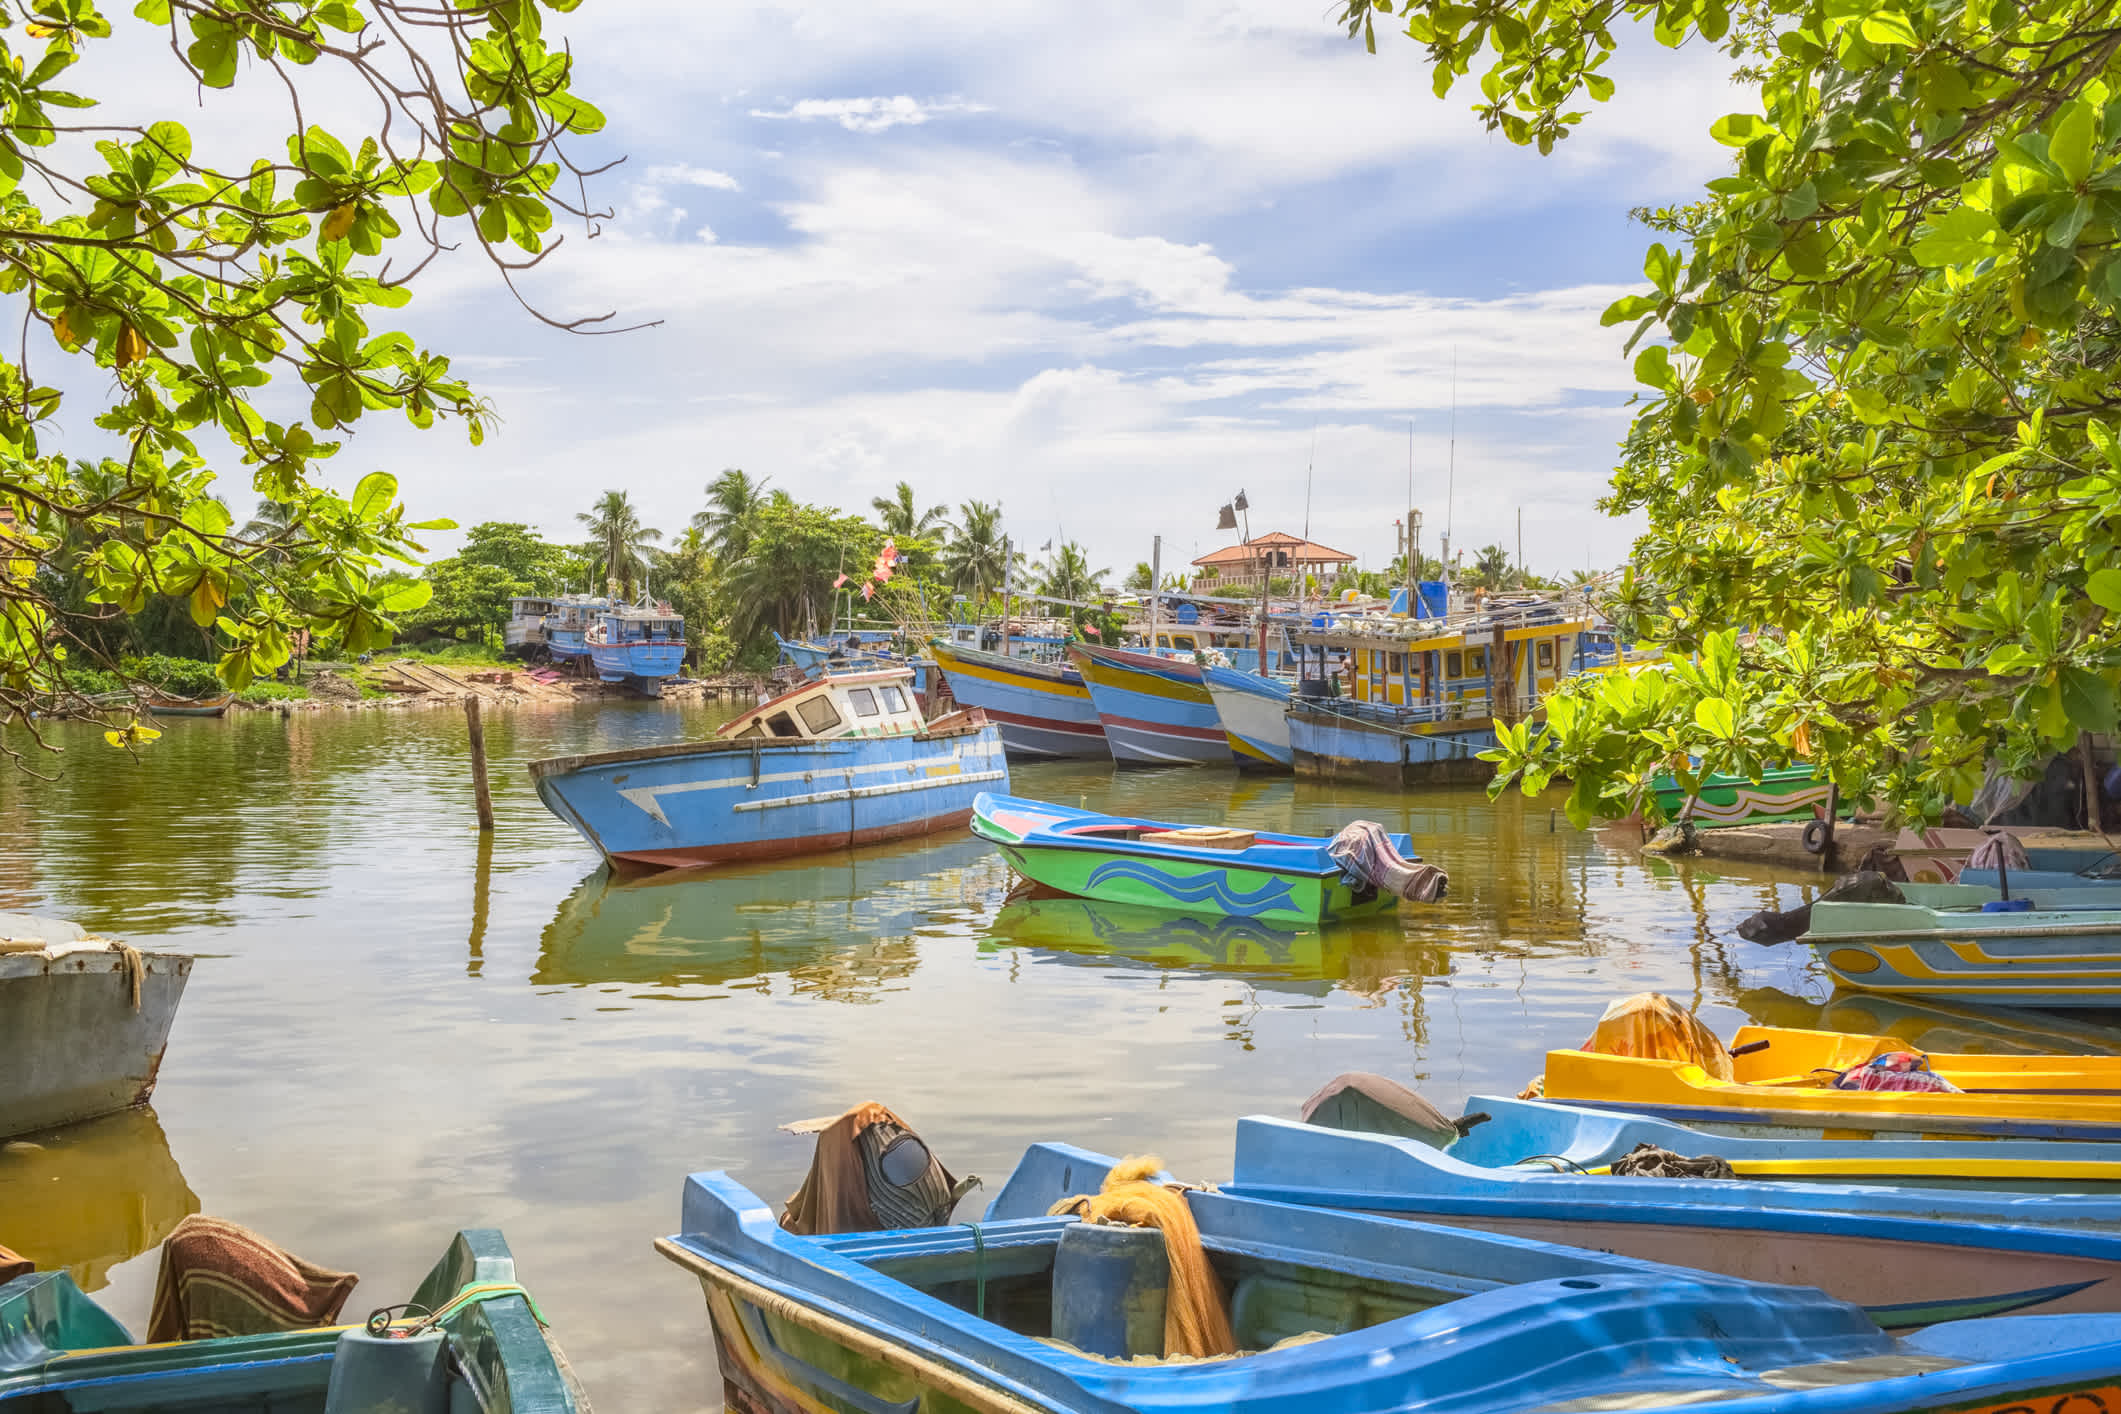 Bateaux de pêche colorés dans le vieux port de Negombo au Sri Lanka.